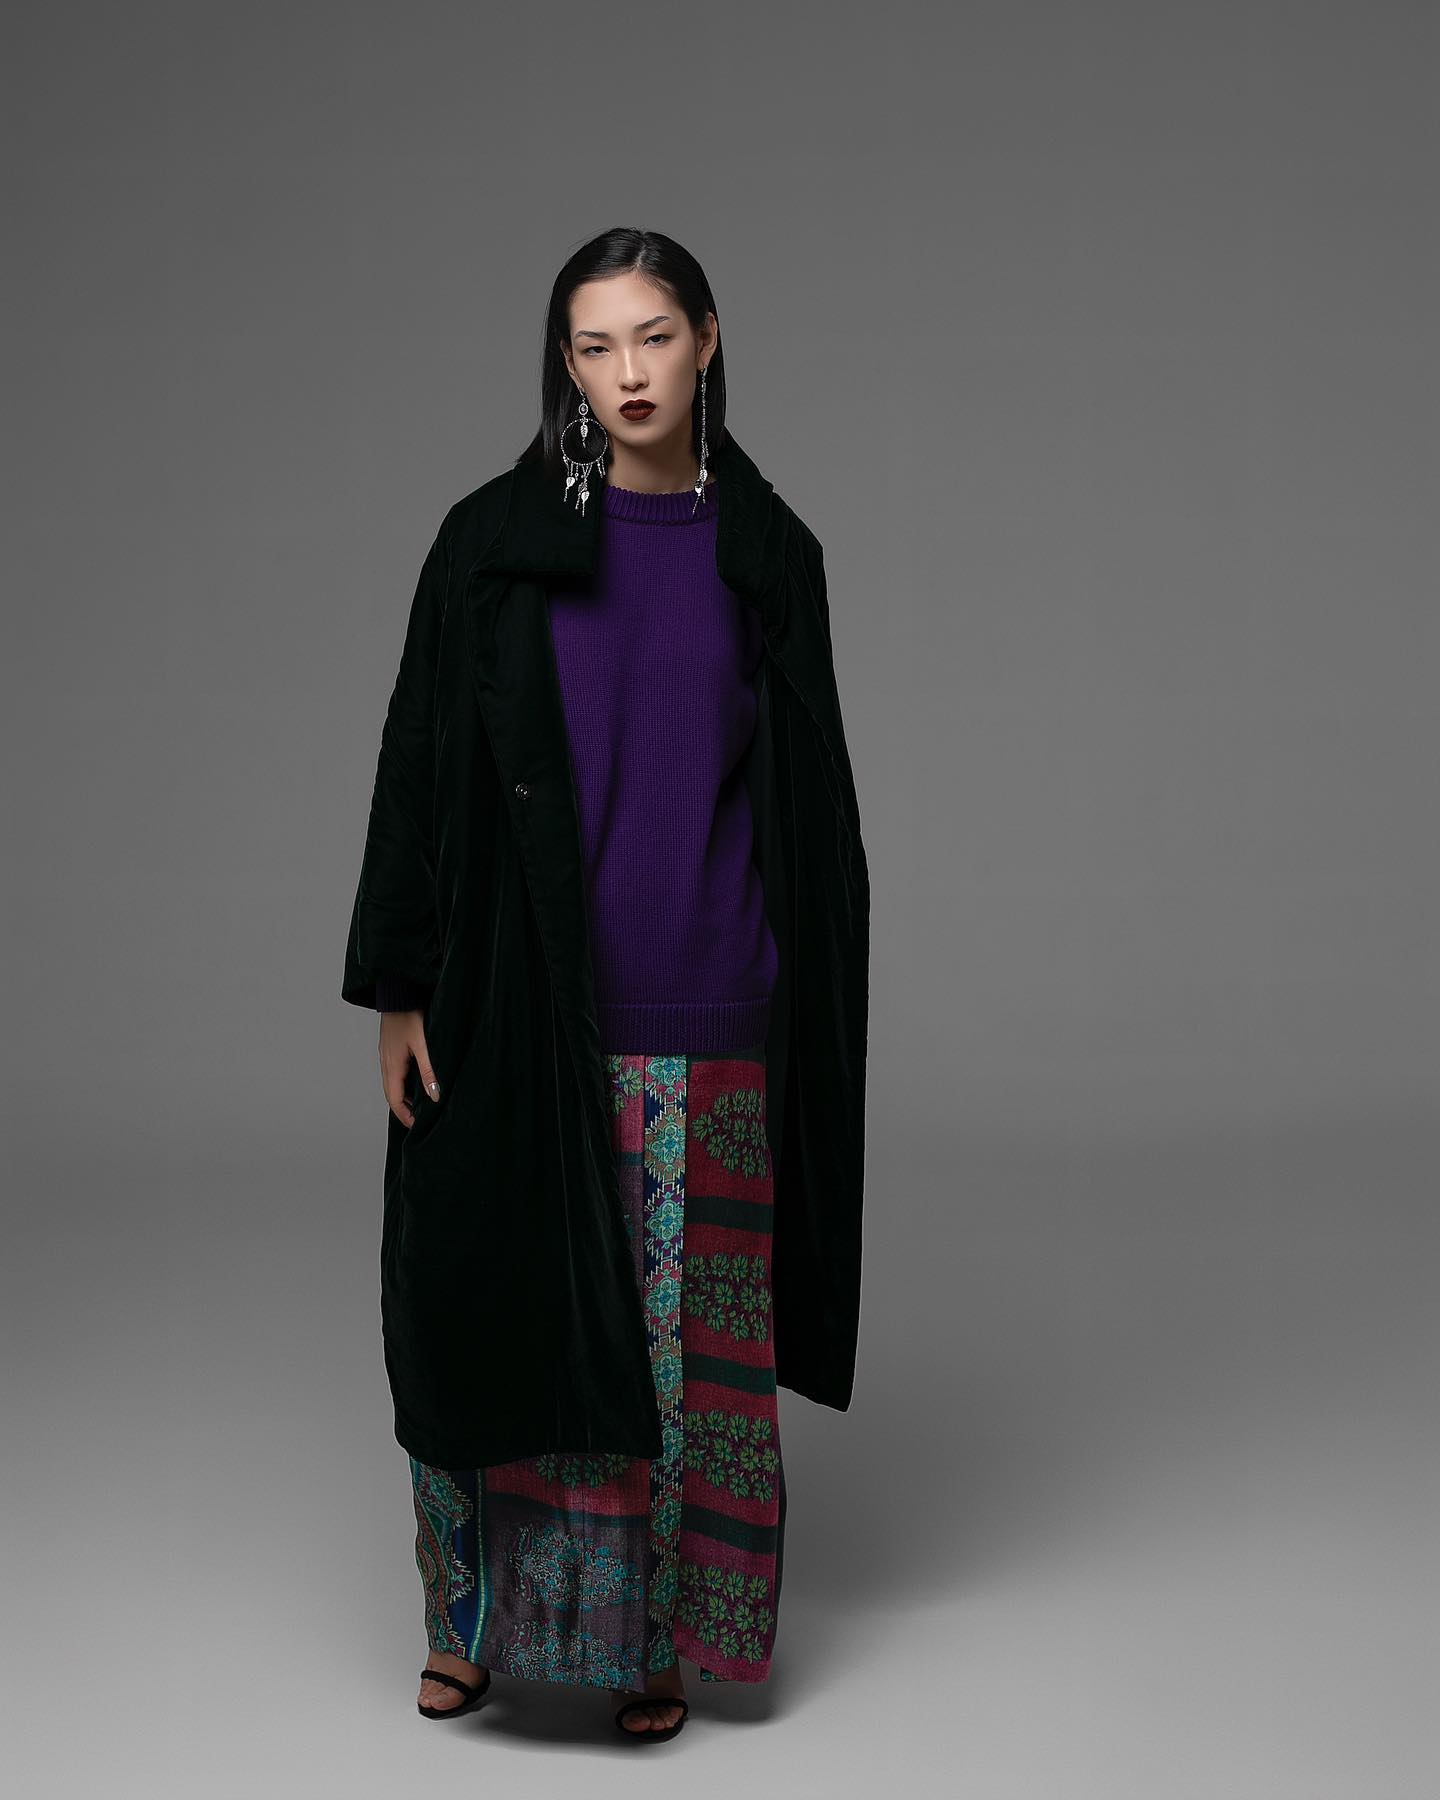 Все о нетрадиционном творческом пути казахстанской моды и предстоящем показе в Лондоне